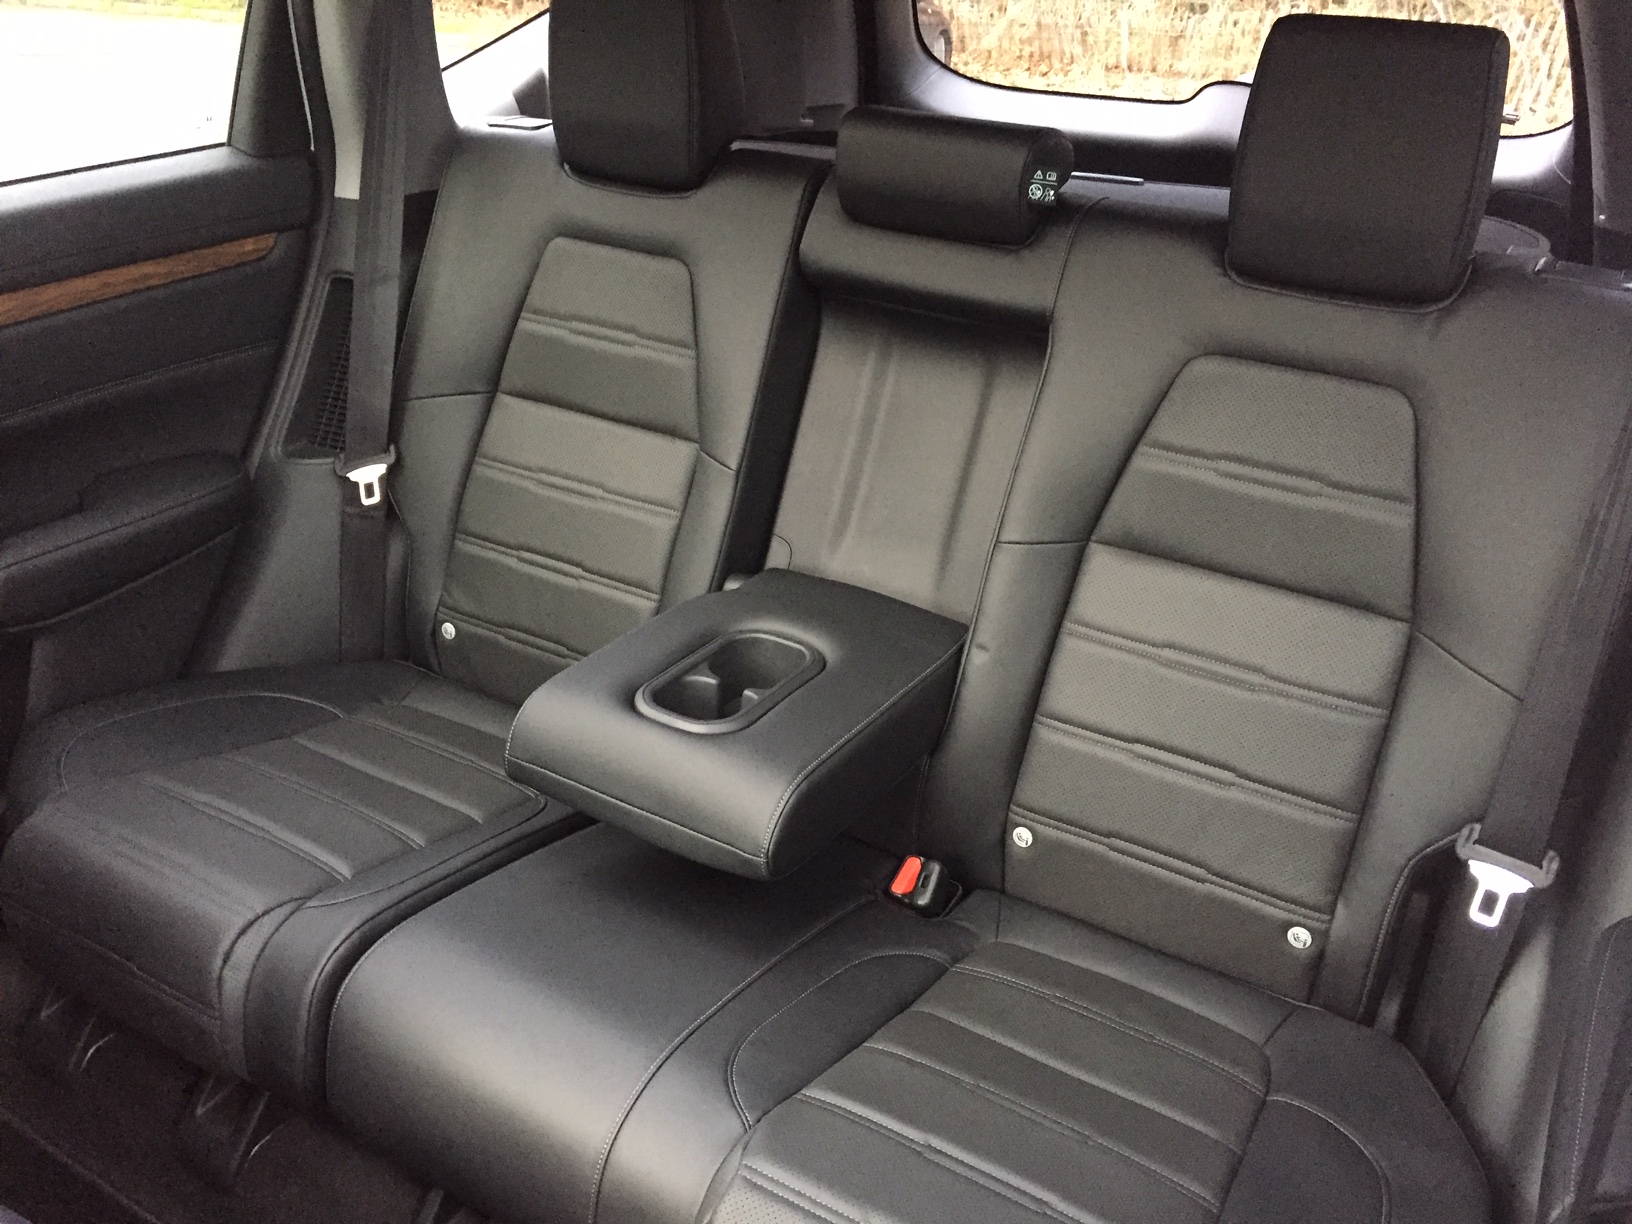 Honda CR-V Hybrid Interior Rear View